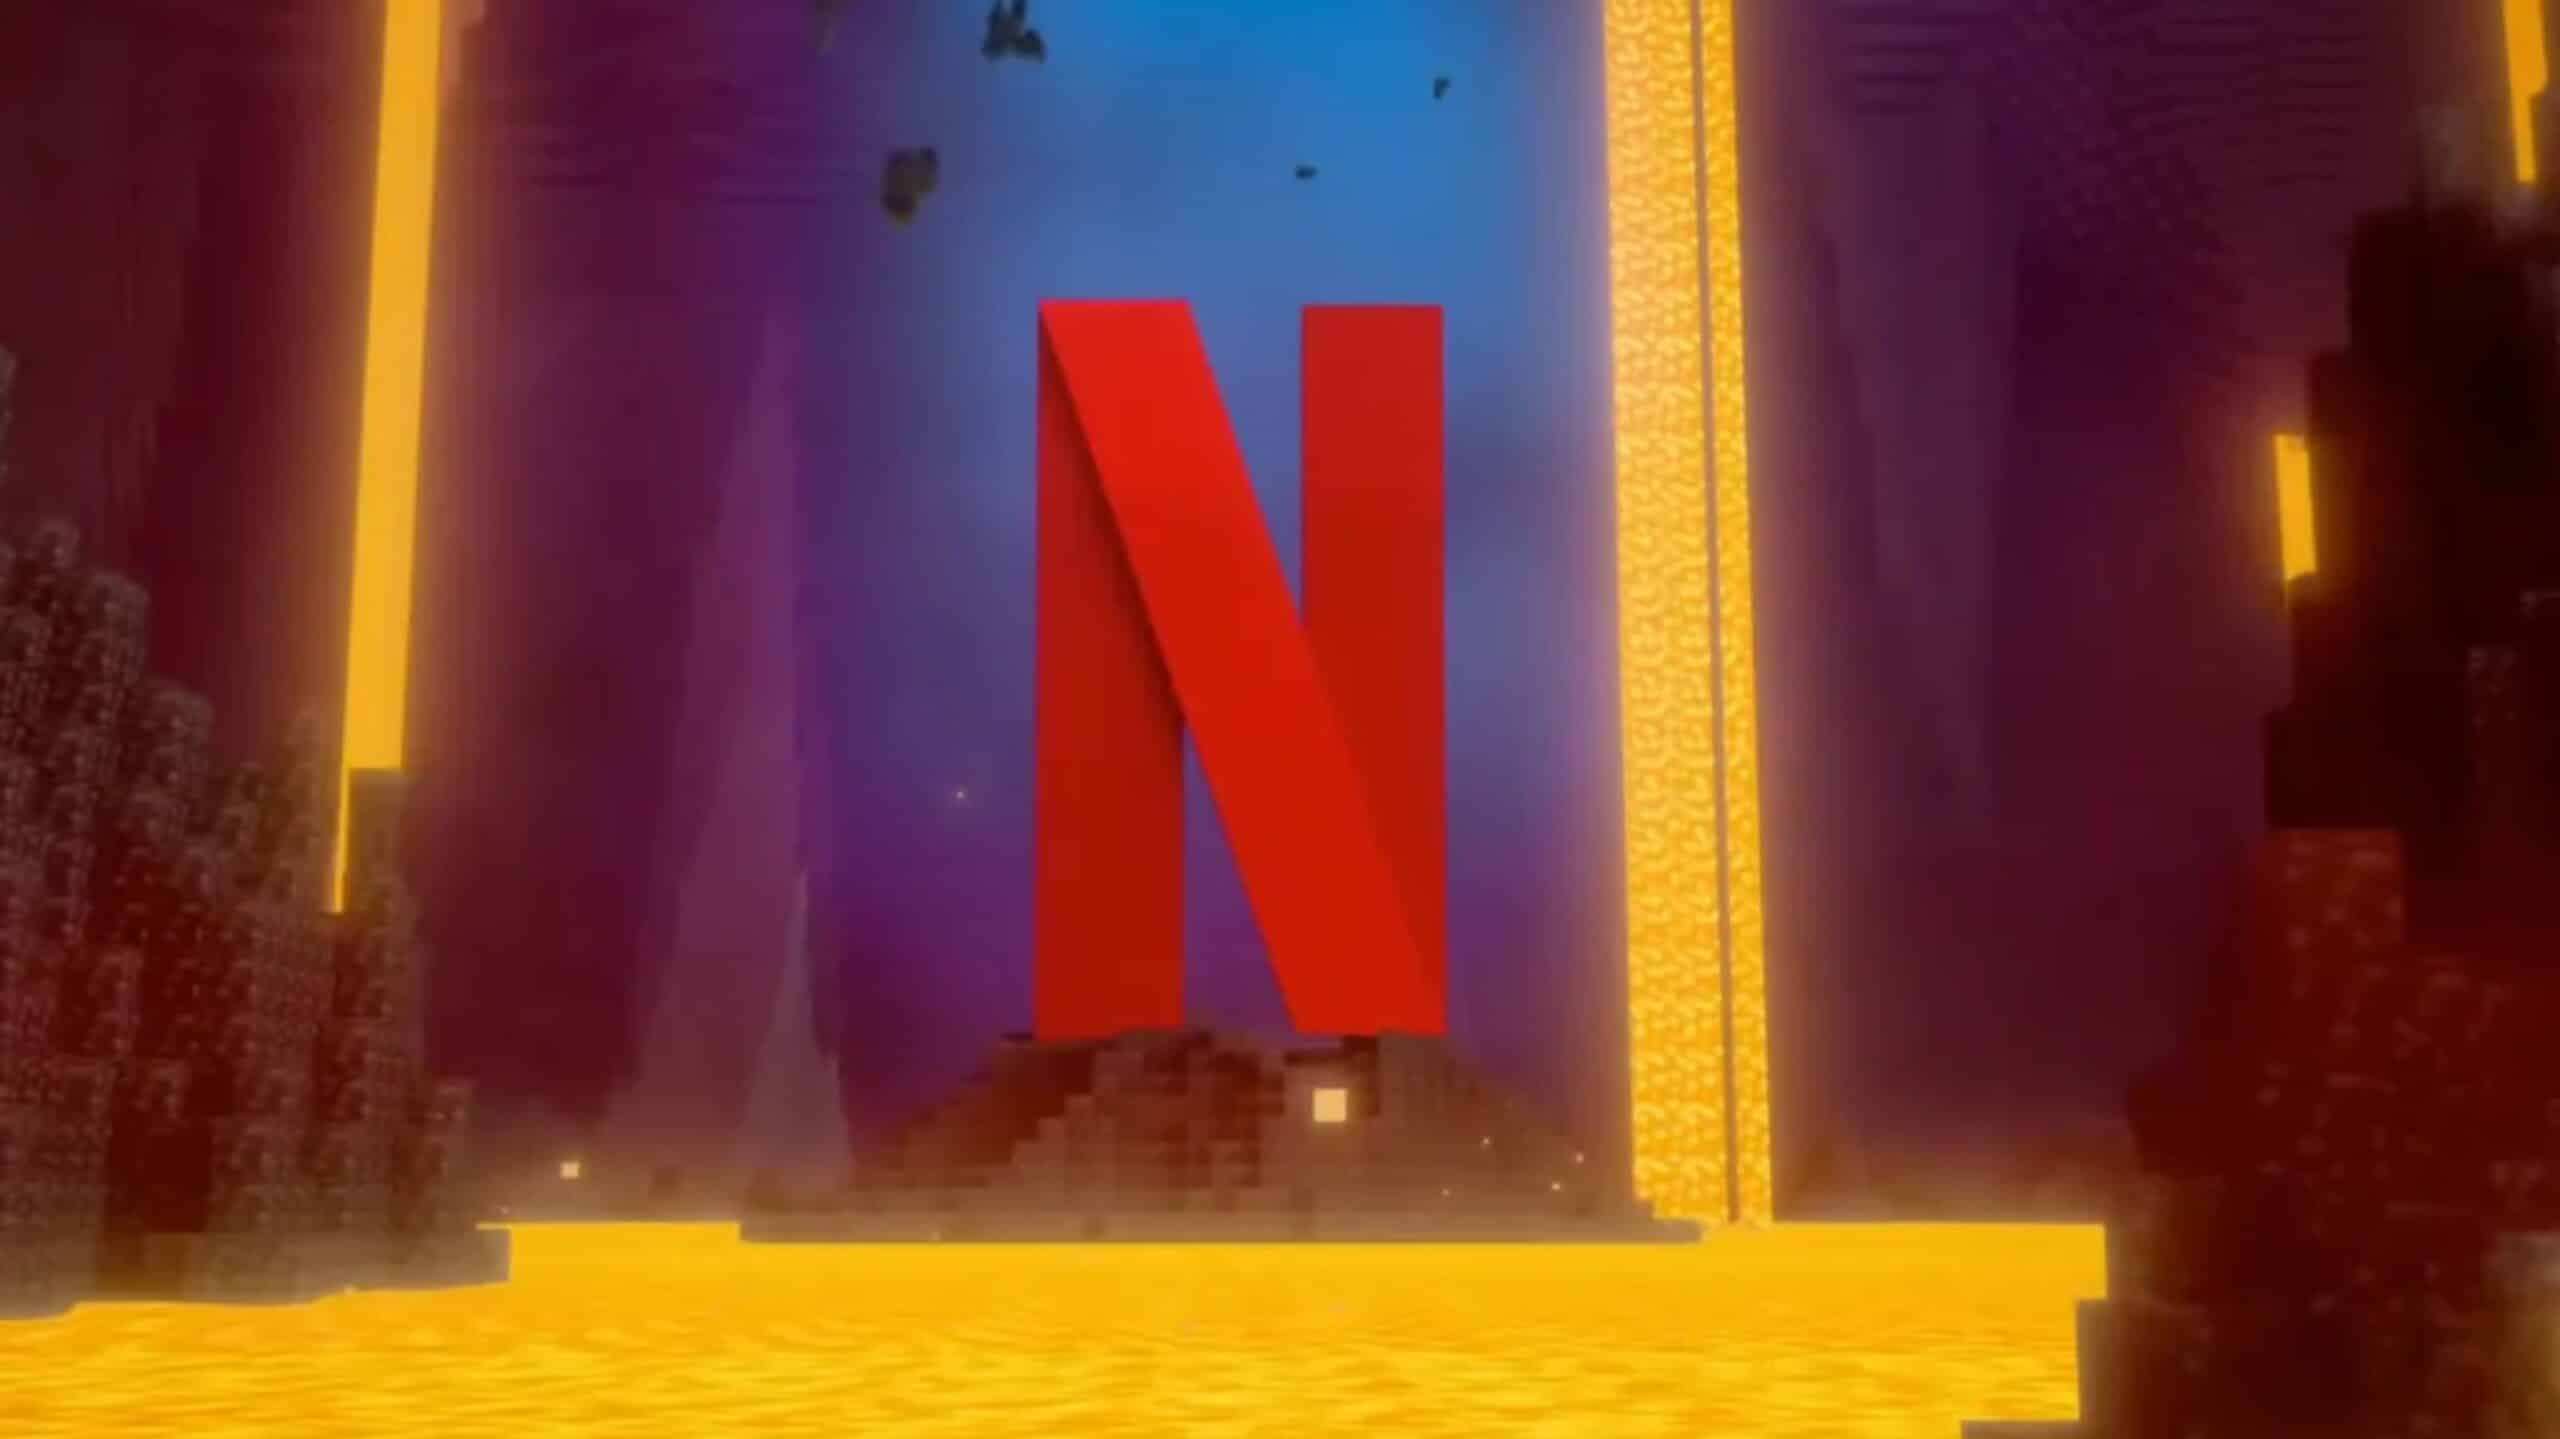 Netflix Minecraft